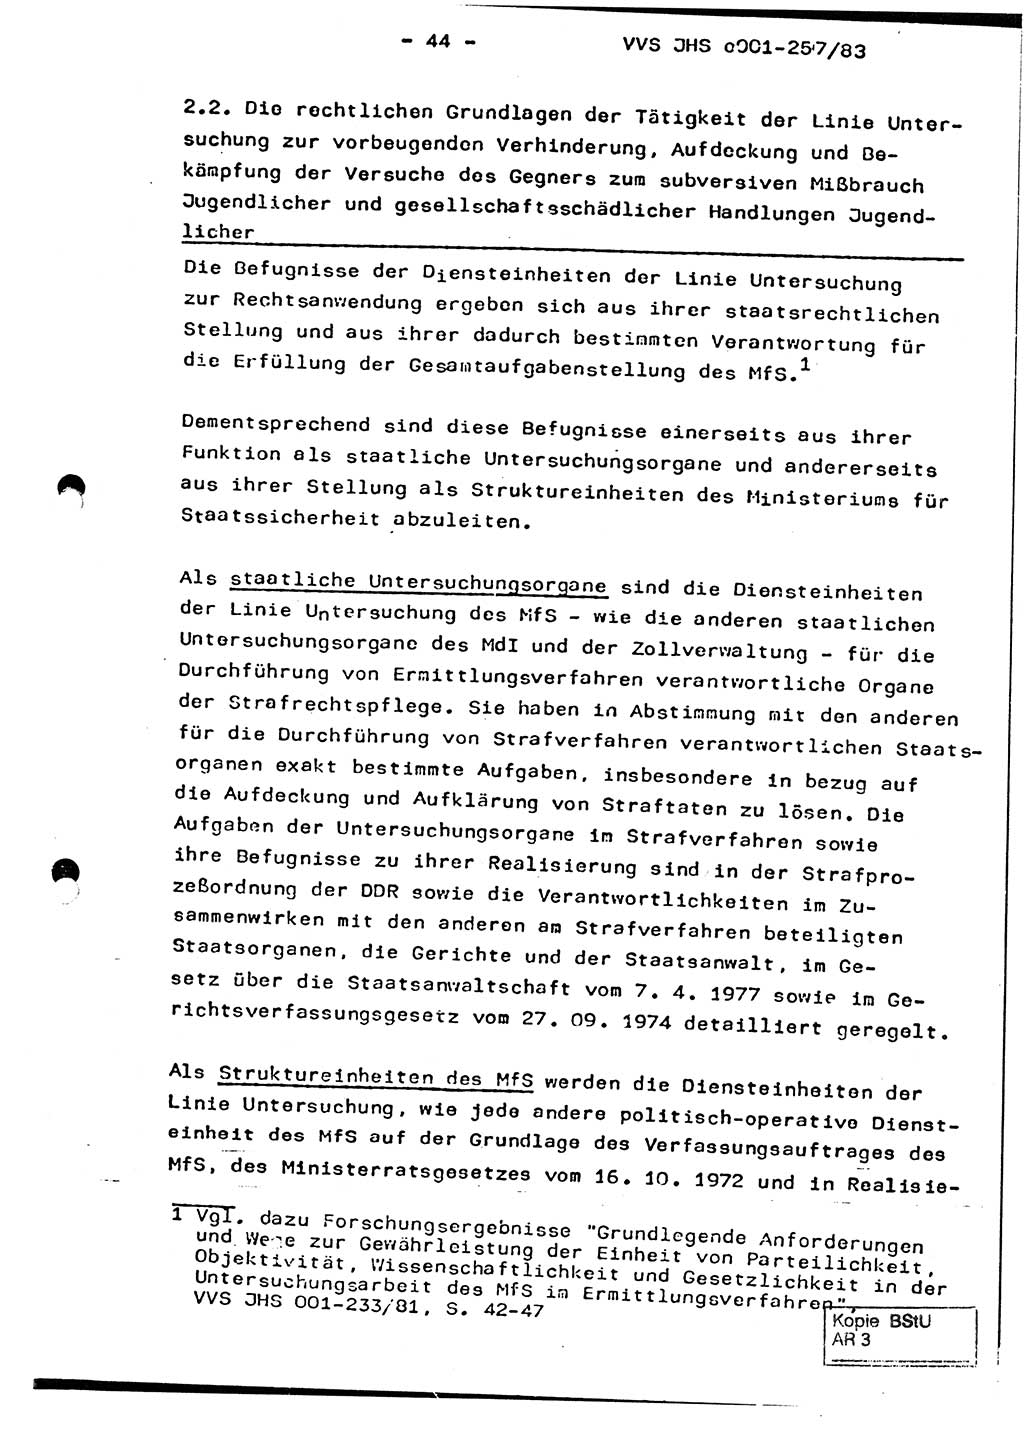 Dissertation, Oberst Helmut Lubas (BV Mdg.), Oberstleutnant Manfred Eschberger (HA IX), Oberleutnant Hans-Jürgen Ludwig (JHS), Ministerium für Staatssicherheit (MfS) [Deutsche Demokratische Republik (DDR)], Juristische Hochschule (JHS), Vertrauliche Verschlußsache (VVS) o001-257/83, Potsdam 1983, Seite 44 (Diss. MfS DDR JHS VVS o001-257/83 1983, S. 44)